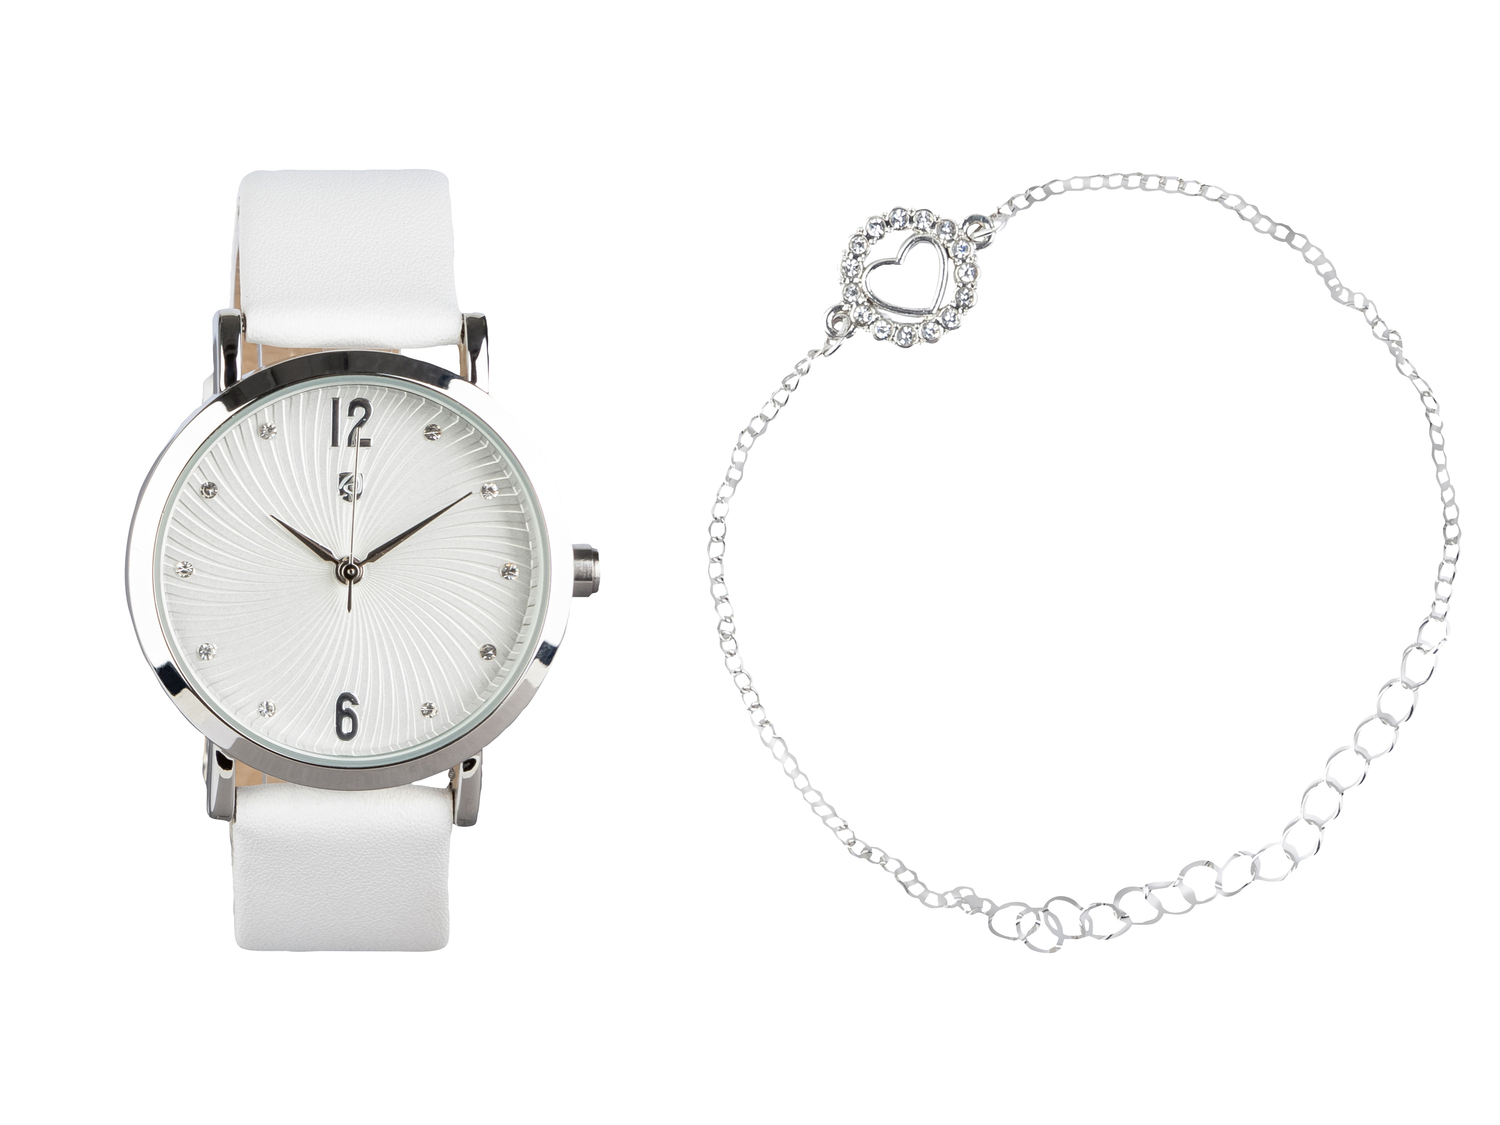 Set orologio e braccialetto da donna Auriol, prezzo 9.99 € 
Idee regalo 
- Orologio ...